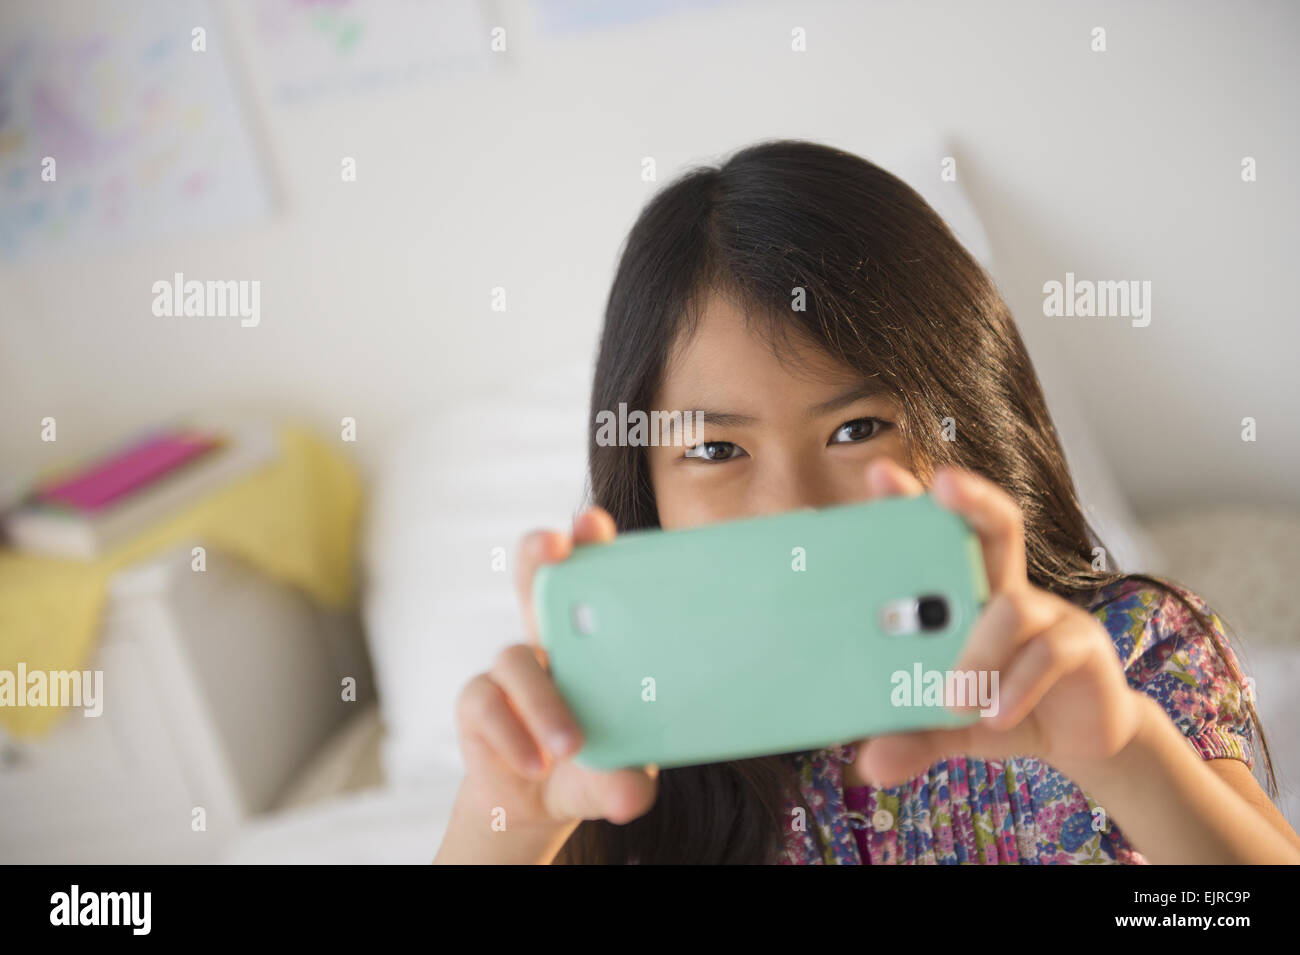 Smiling fille vietnamienne en tenant la photographie de téléphone cellulaire Banque D'Images